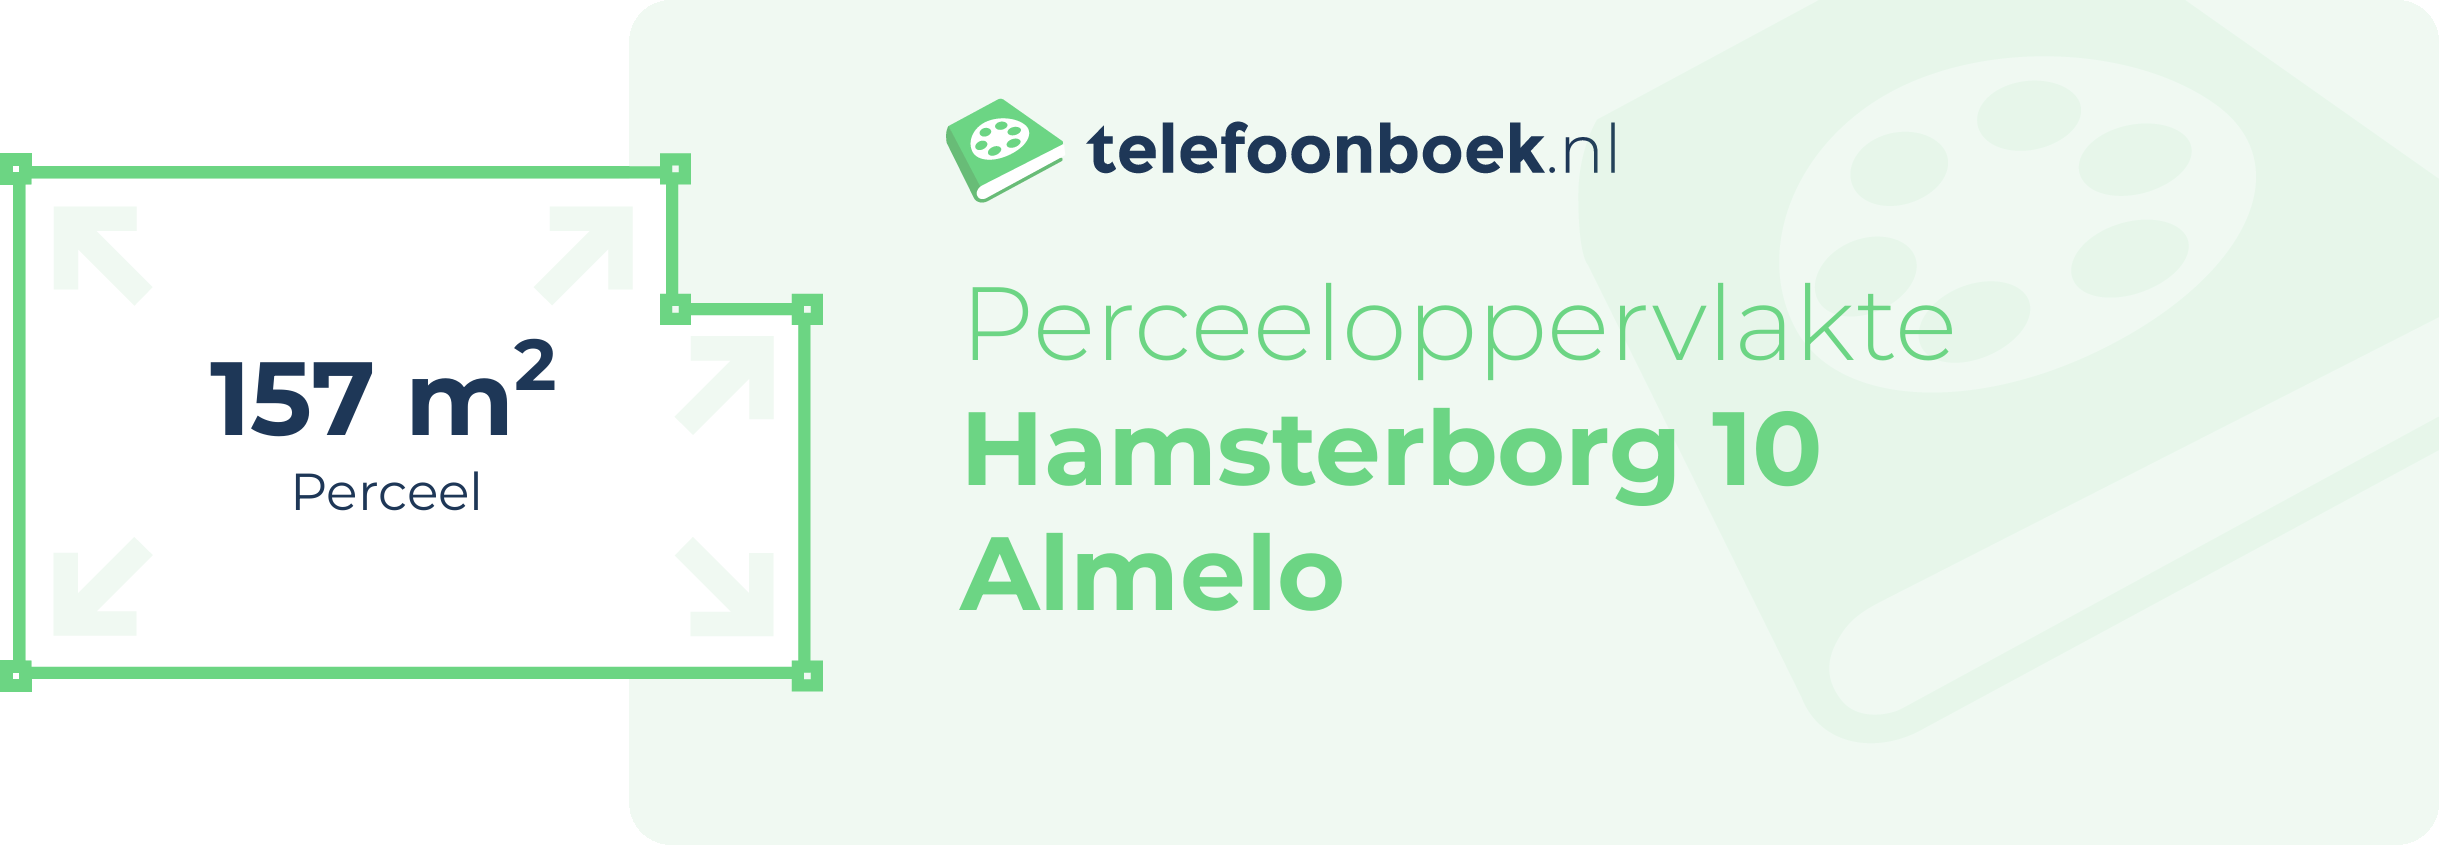 Perceeloppervlakte Hamsterborg 10 Almelo